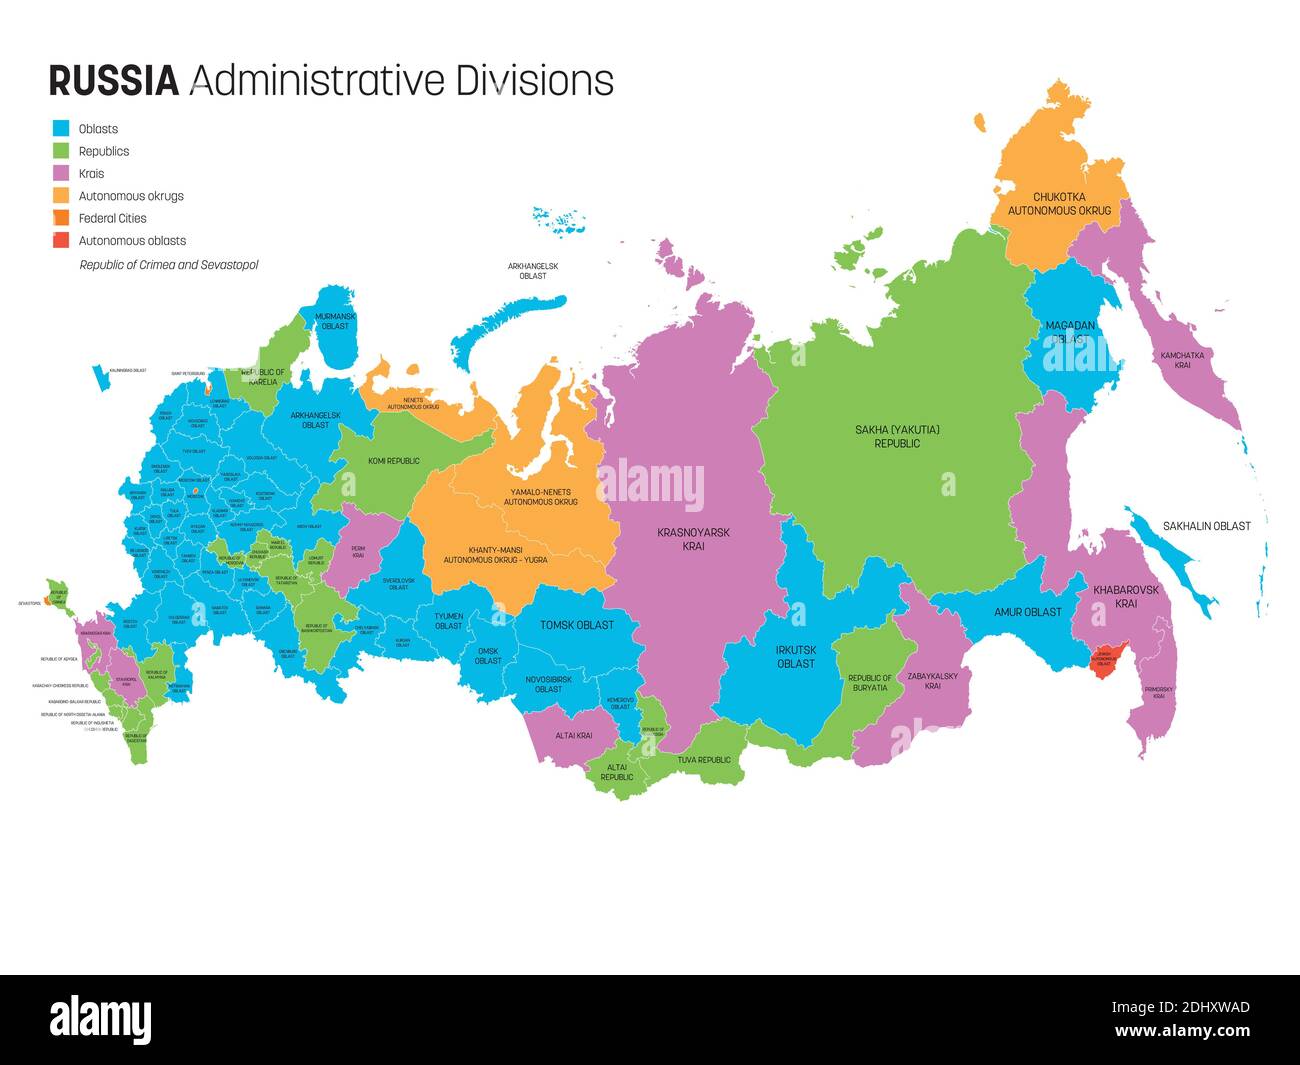 Mappa politica della Russia, o Federazione russa divisa per tipi di materie federali - repubbliche, razze, oblasti, città di importanza federale, oblasti autonomi e okrugs autonomi. Semplice mappa vettoriale piatta con etichette. Illustrazione Vettoriale